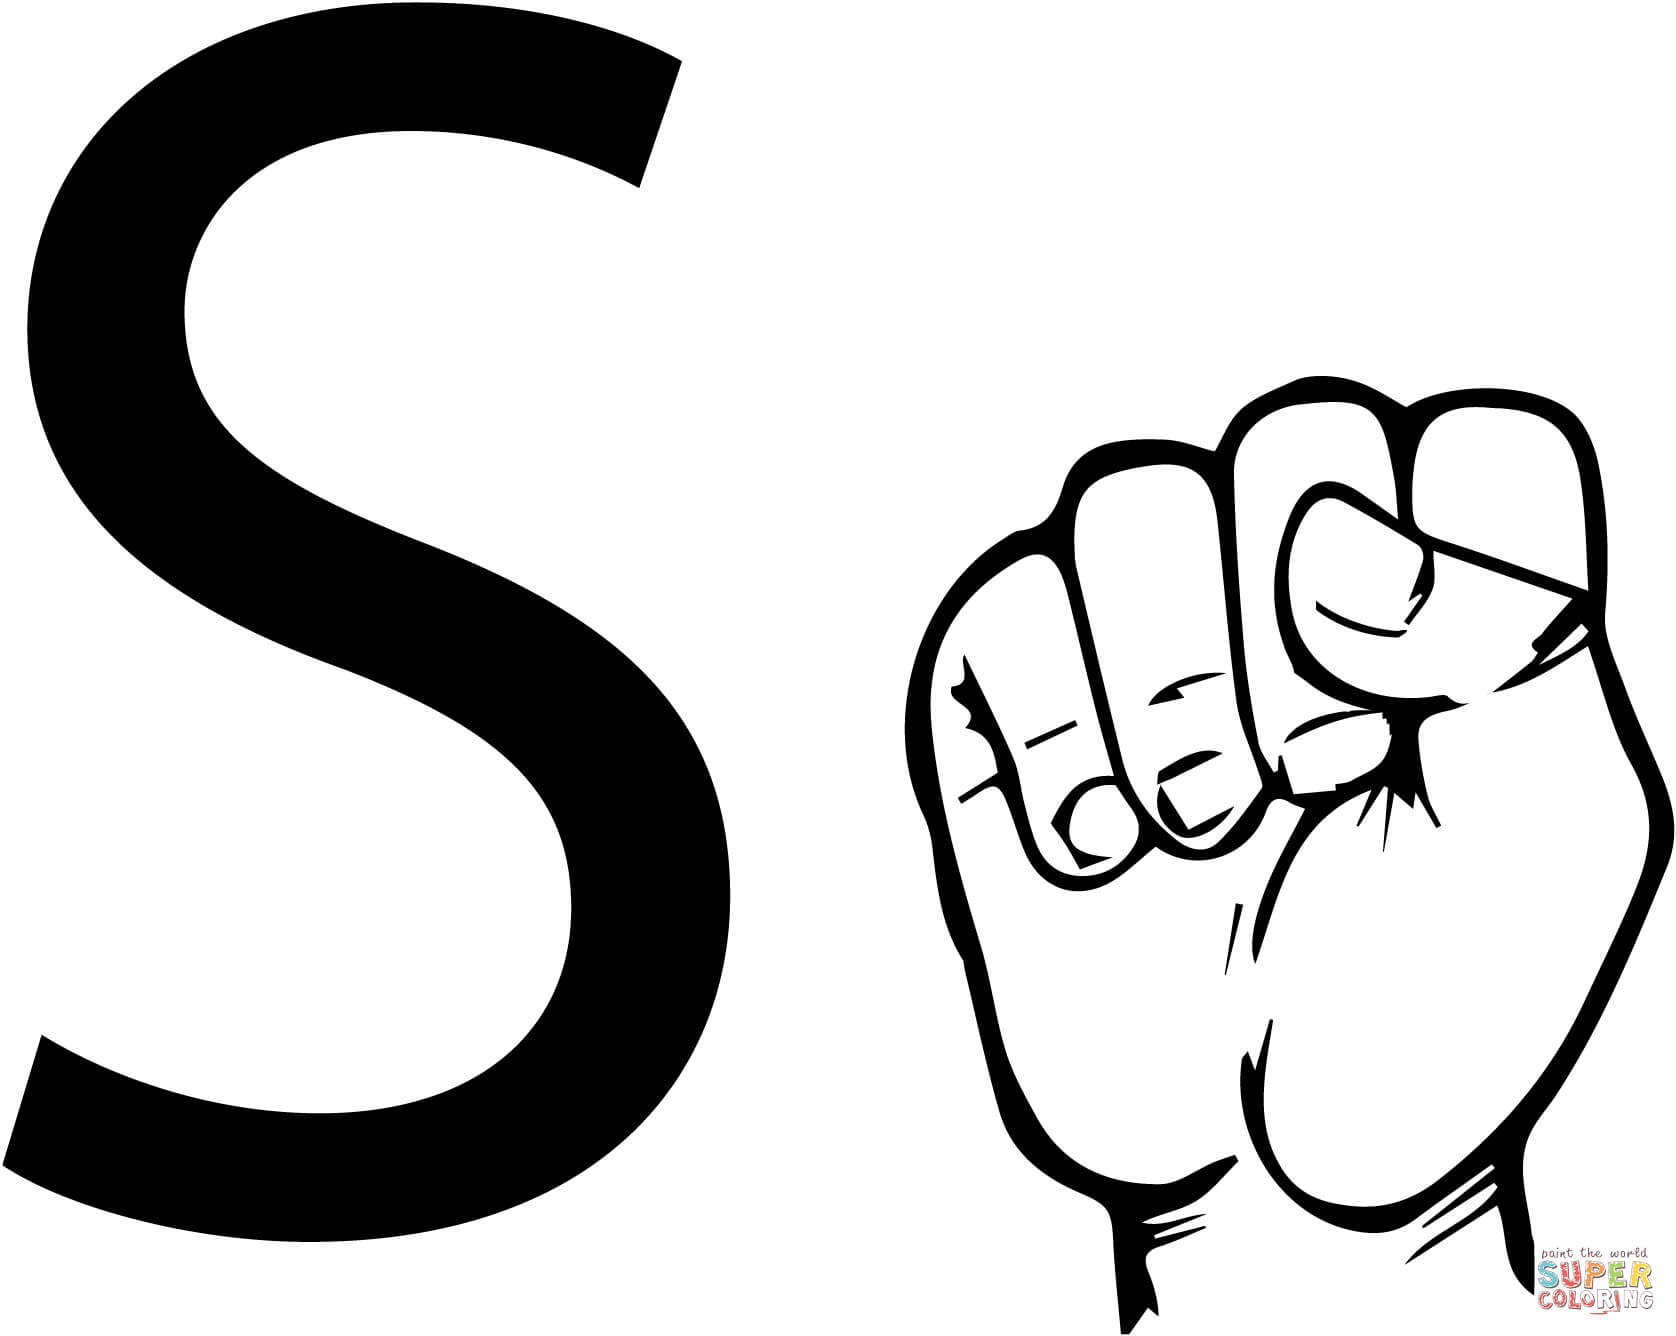 Lettre S en langue des signes ASL à partir de la lettre S